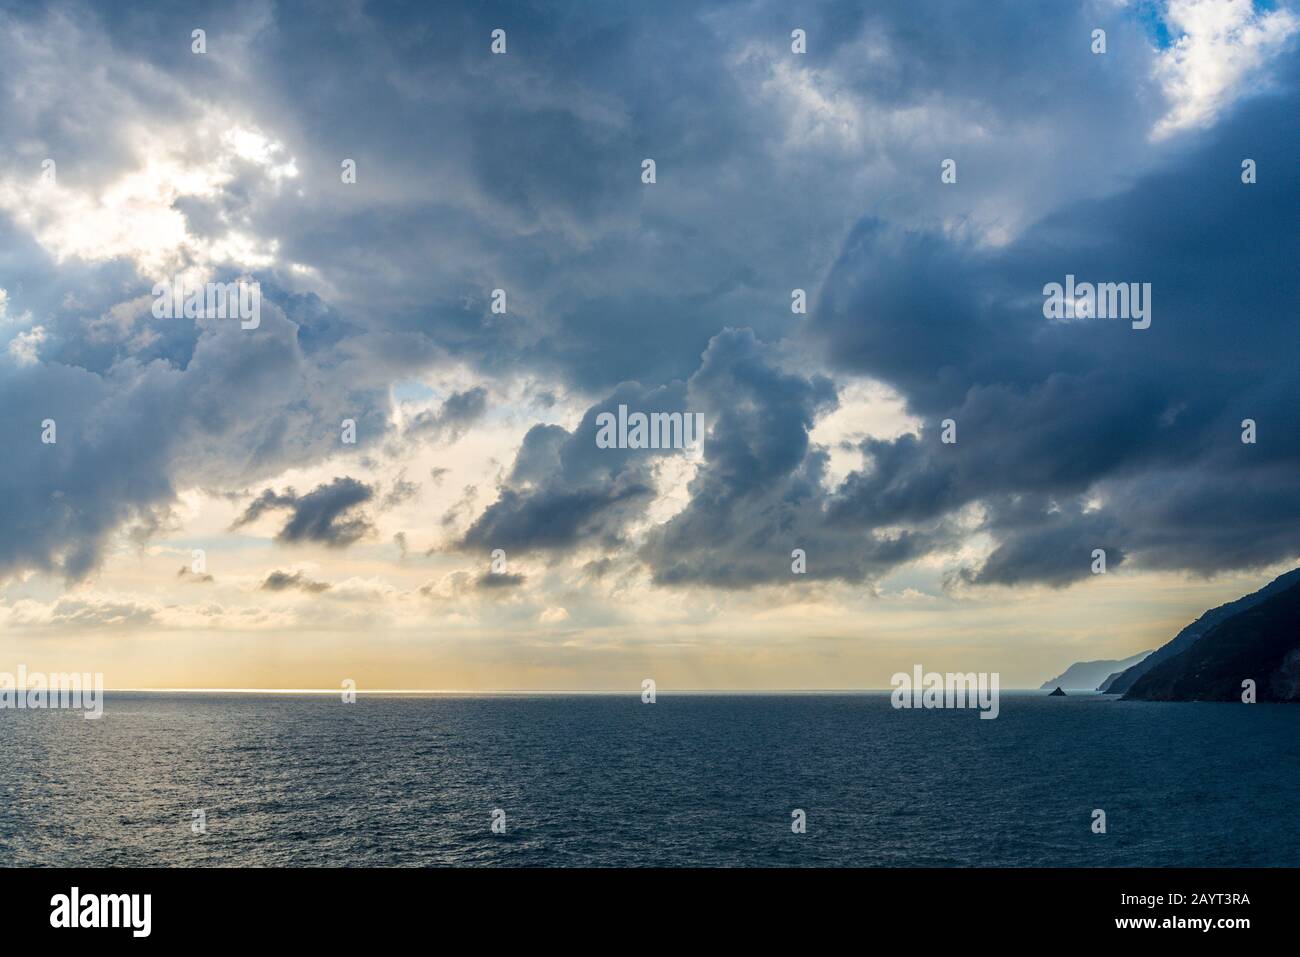 Il cielo con le nuvole basse sopra il mare scuro in serata Foto Stock